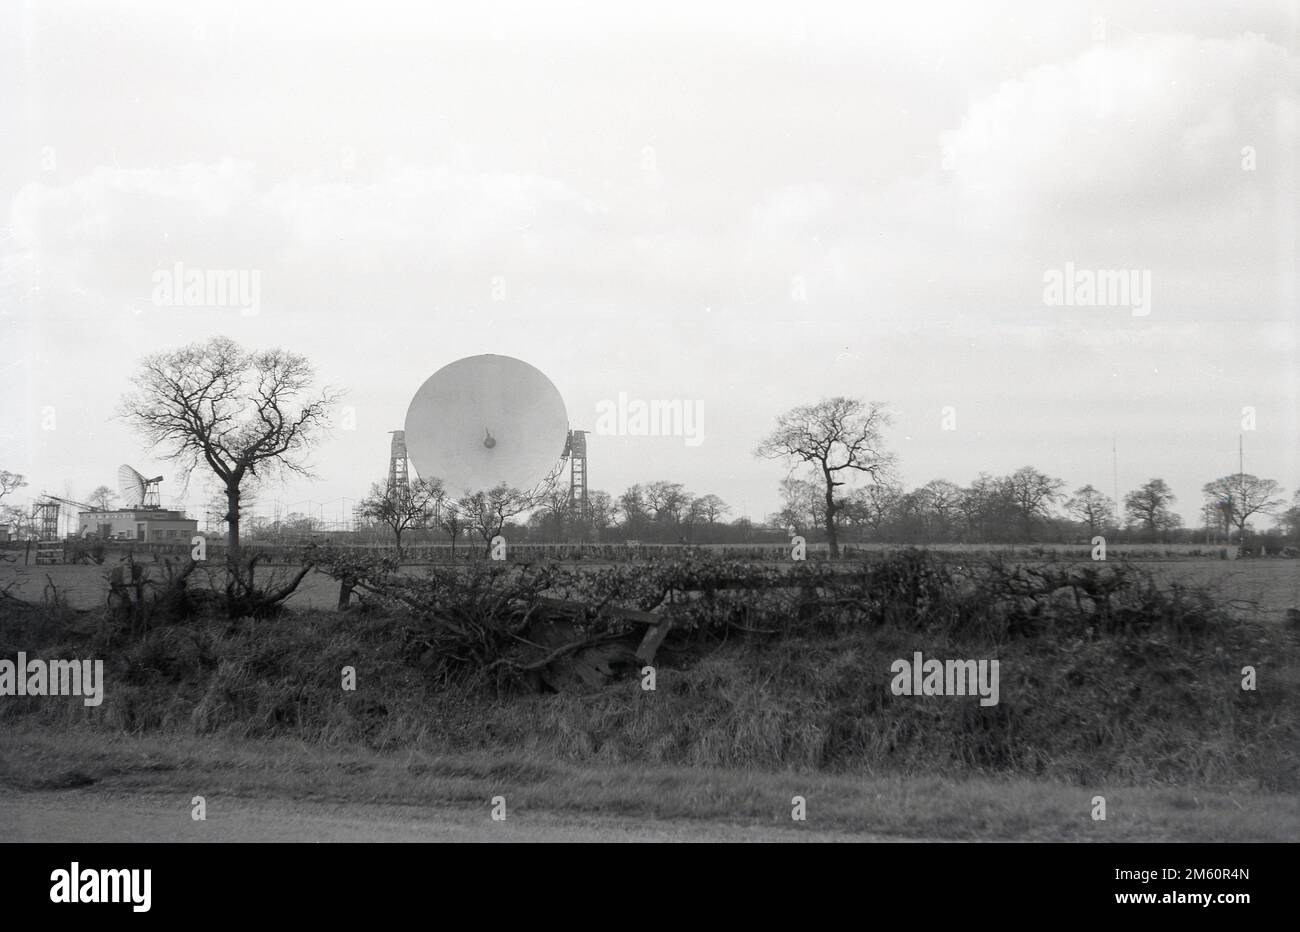 Fin 1950s, vue historique du télescope Mark i ou Lovell, Cheshire, Angleterre, Royaume-Uni, le plus grand radiotélescope parabolique du monde lors de sa construction en 1957. Le radiotélescope porte le nom de Bernard Lovell, un astronome radiophonique de l'Université de Manchester qui a établi un observatoire - l'Observatoire de la banque Jodrell - dans le nord-ouest de l'Angleterre en 1945 pour étudier les rayons cosmiques, en continu le travail qu'il avait entrepris sur le radar pendant la Seconde Guerre mondiale. En 1988, le Lovell Telescope a été construit dans un bâtiment classé de catégorie I, ce qui signifie qu'il s'agit d'un bâtiment d'un « intérêt exceptionnel ». Banque D'Images